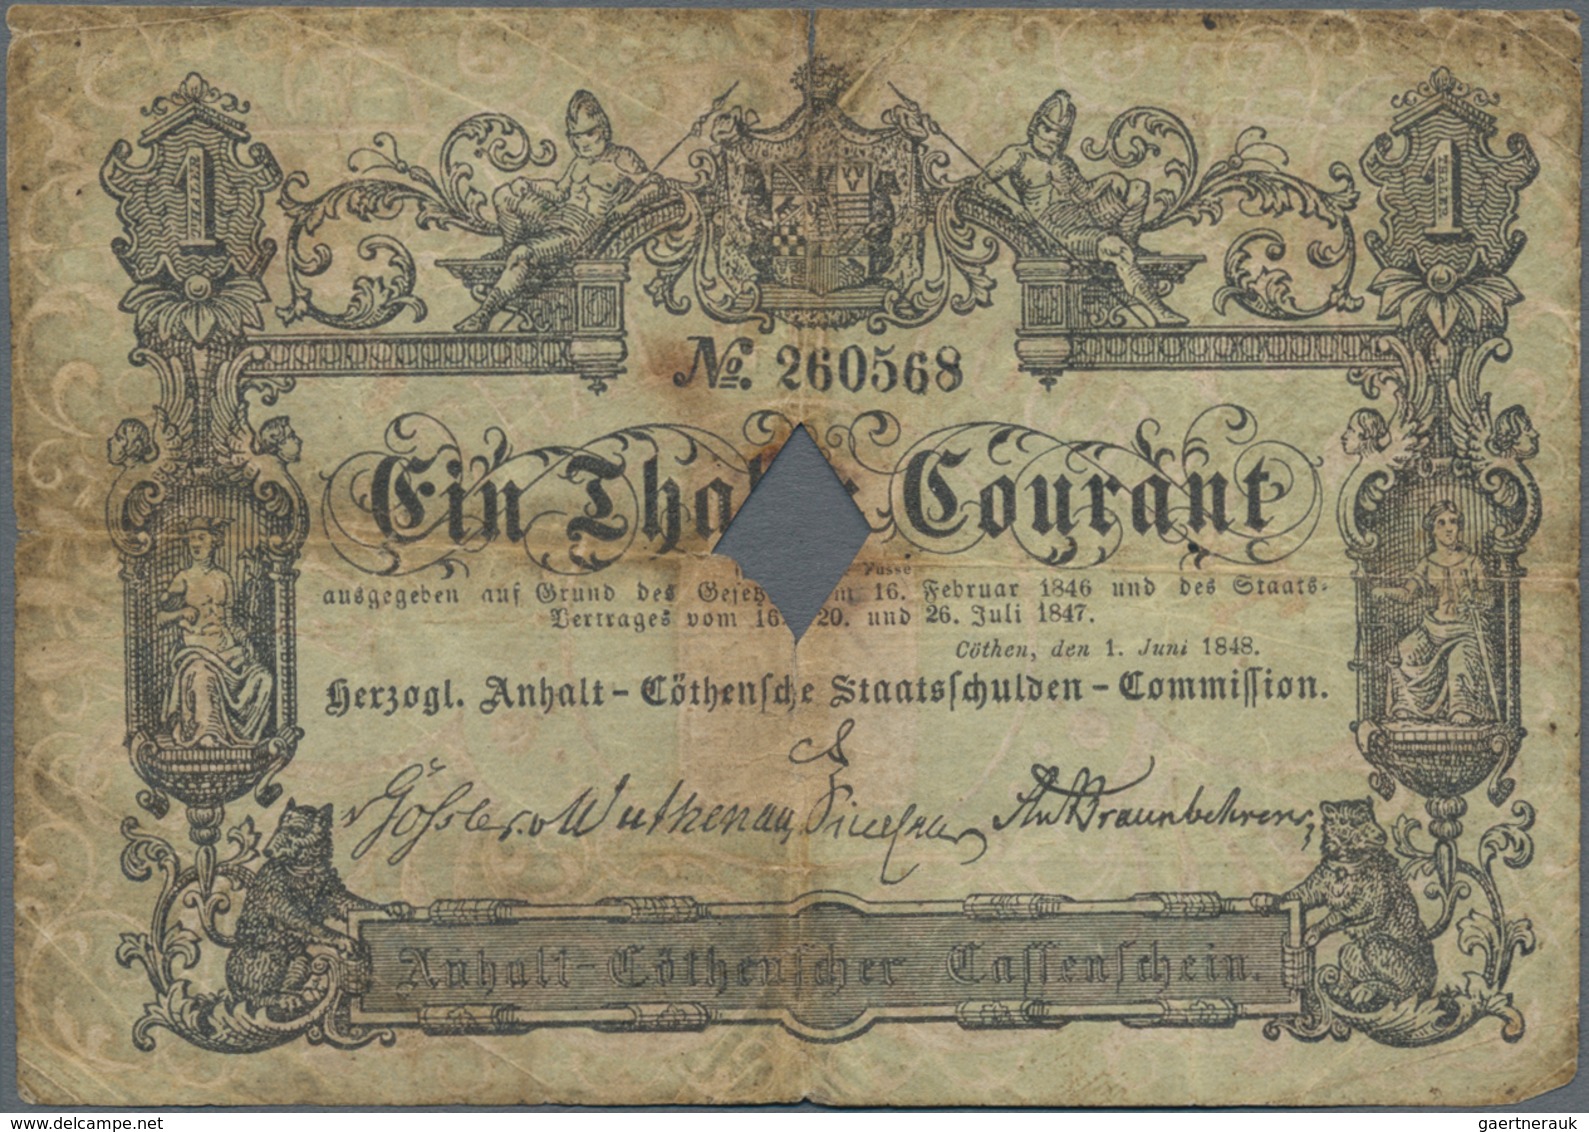 Deutschland - Altdeutsche Staaten: Herzogl. Anhalt-Cöthensche Staatsschulden-Commission 1 Thaler 184 - [ 1] …-1871 : Etats Allemands